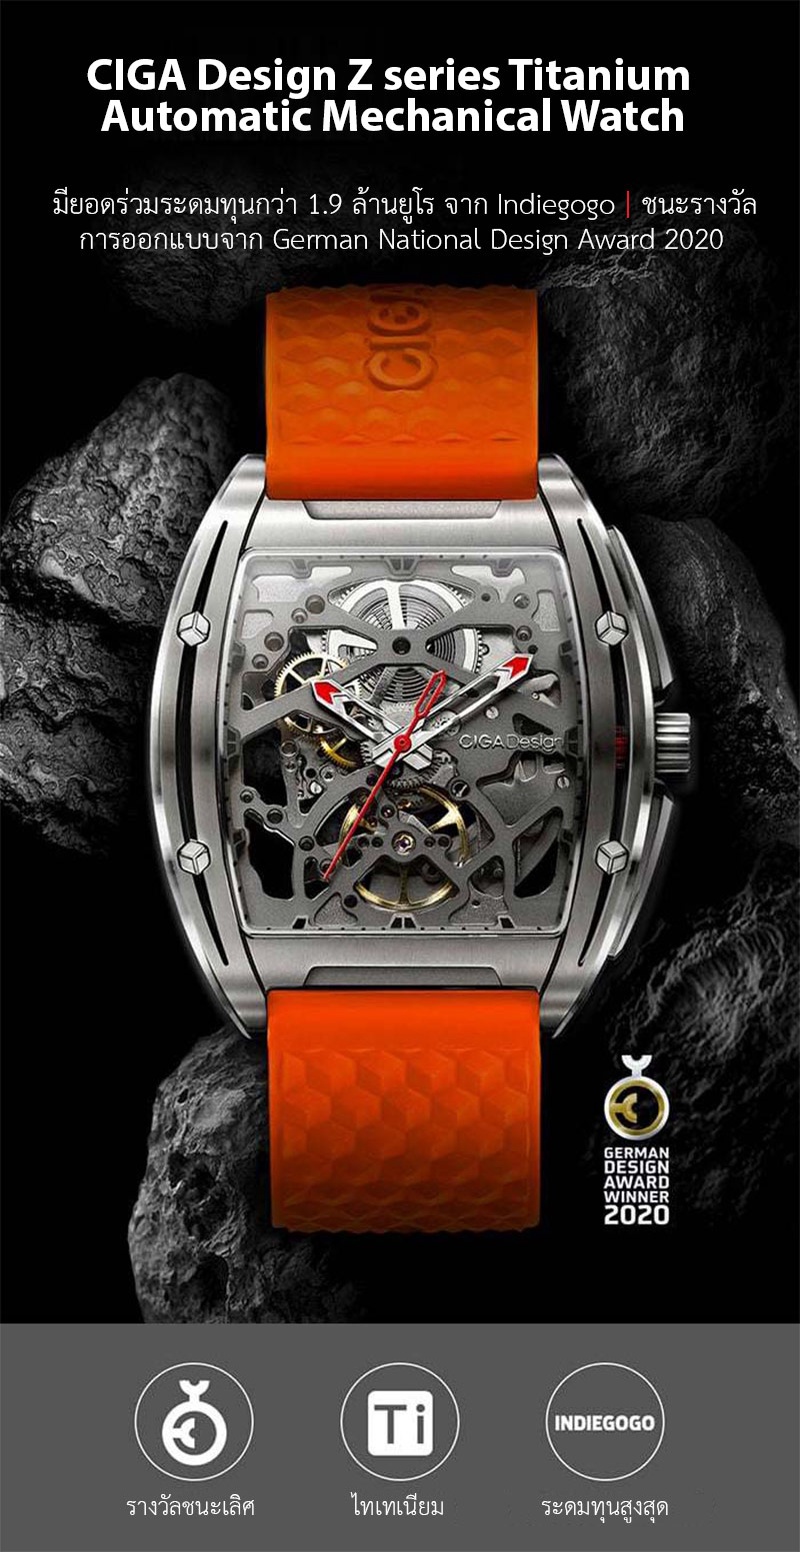 ภาพประกอบของ CIGA Design Z series Titanium Automatic Mechanical Watch - นาฬิกาซิก้า ดีไซน์ รุ่น Z Series Titanium